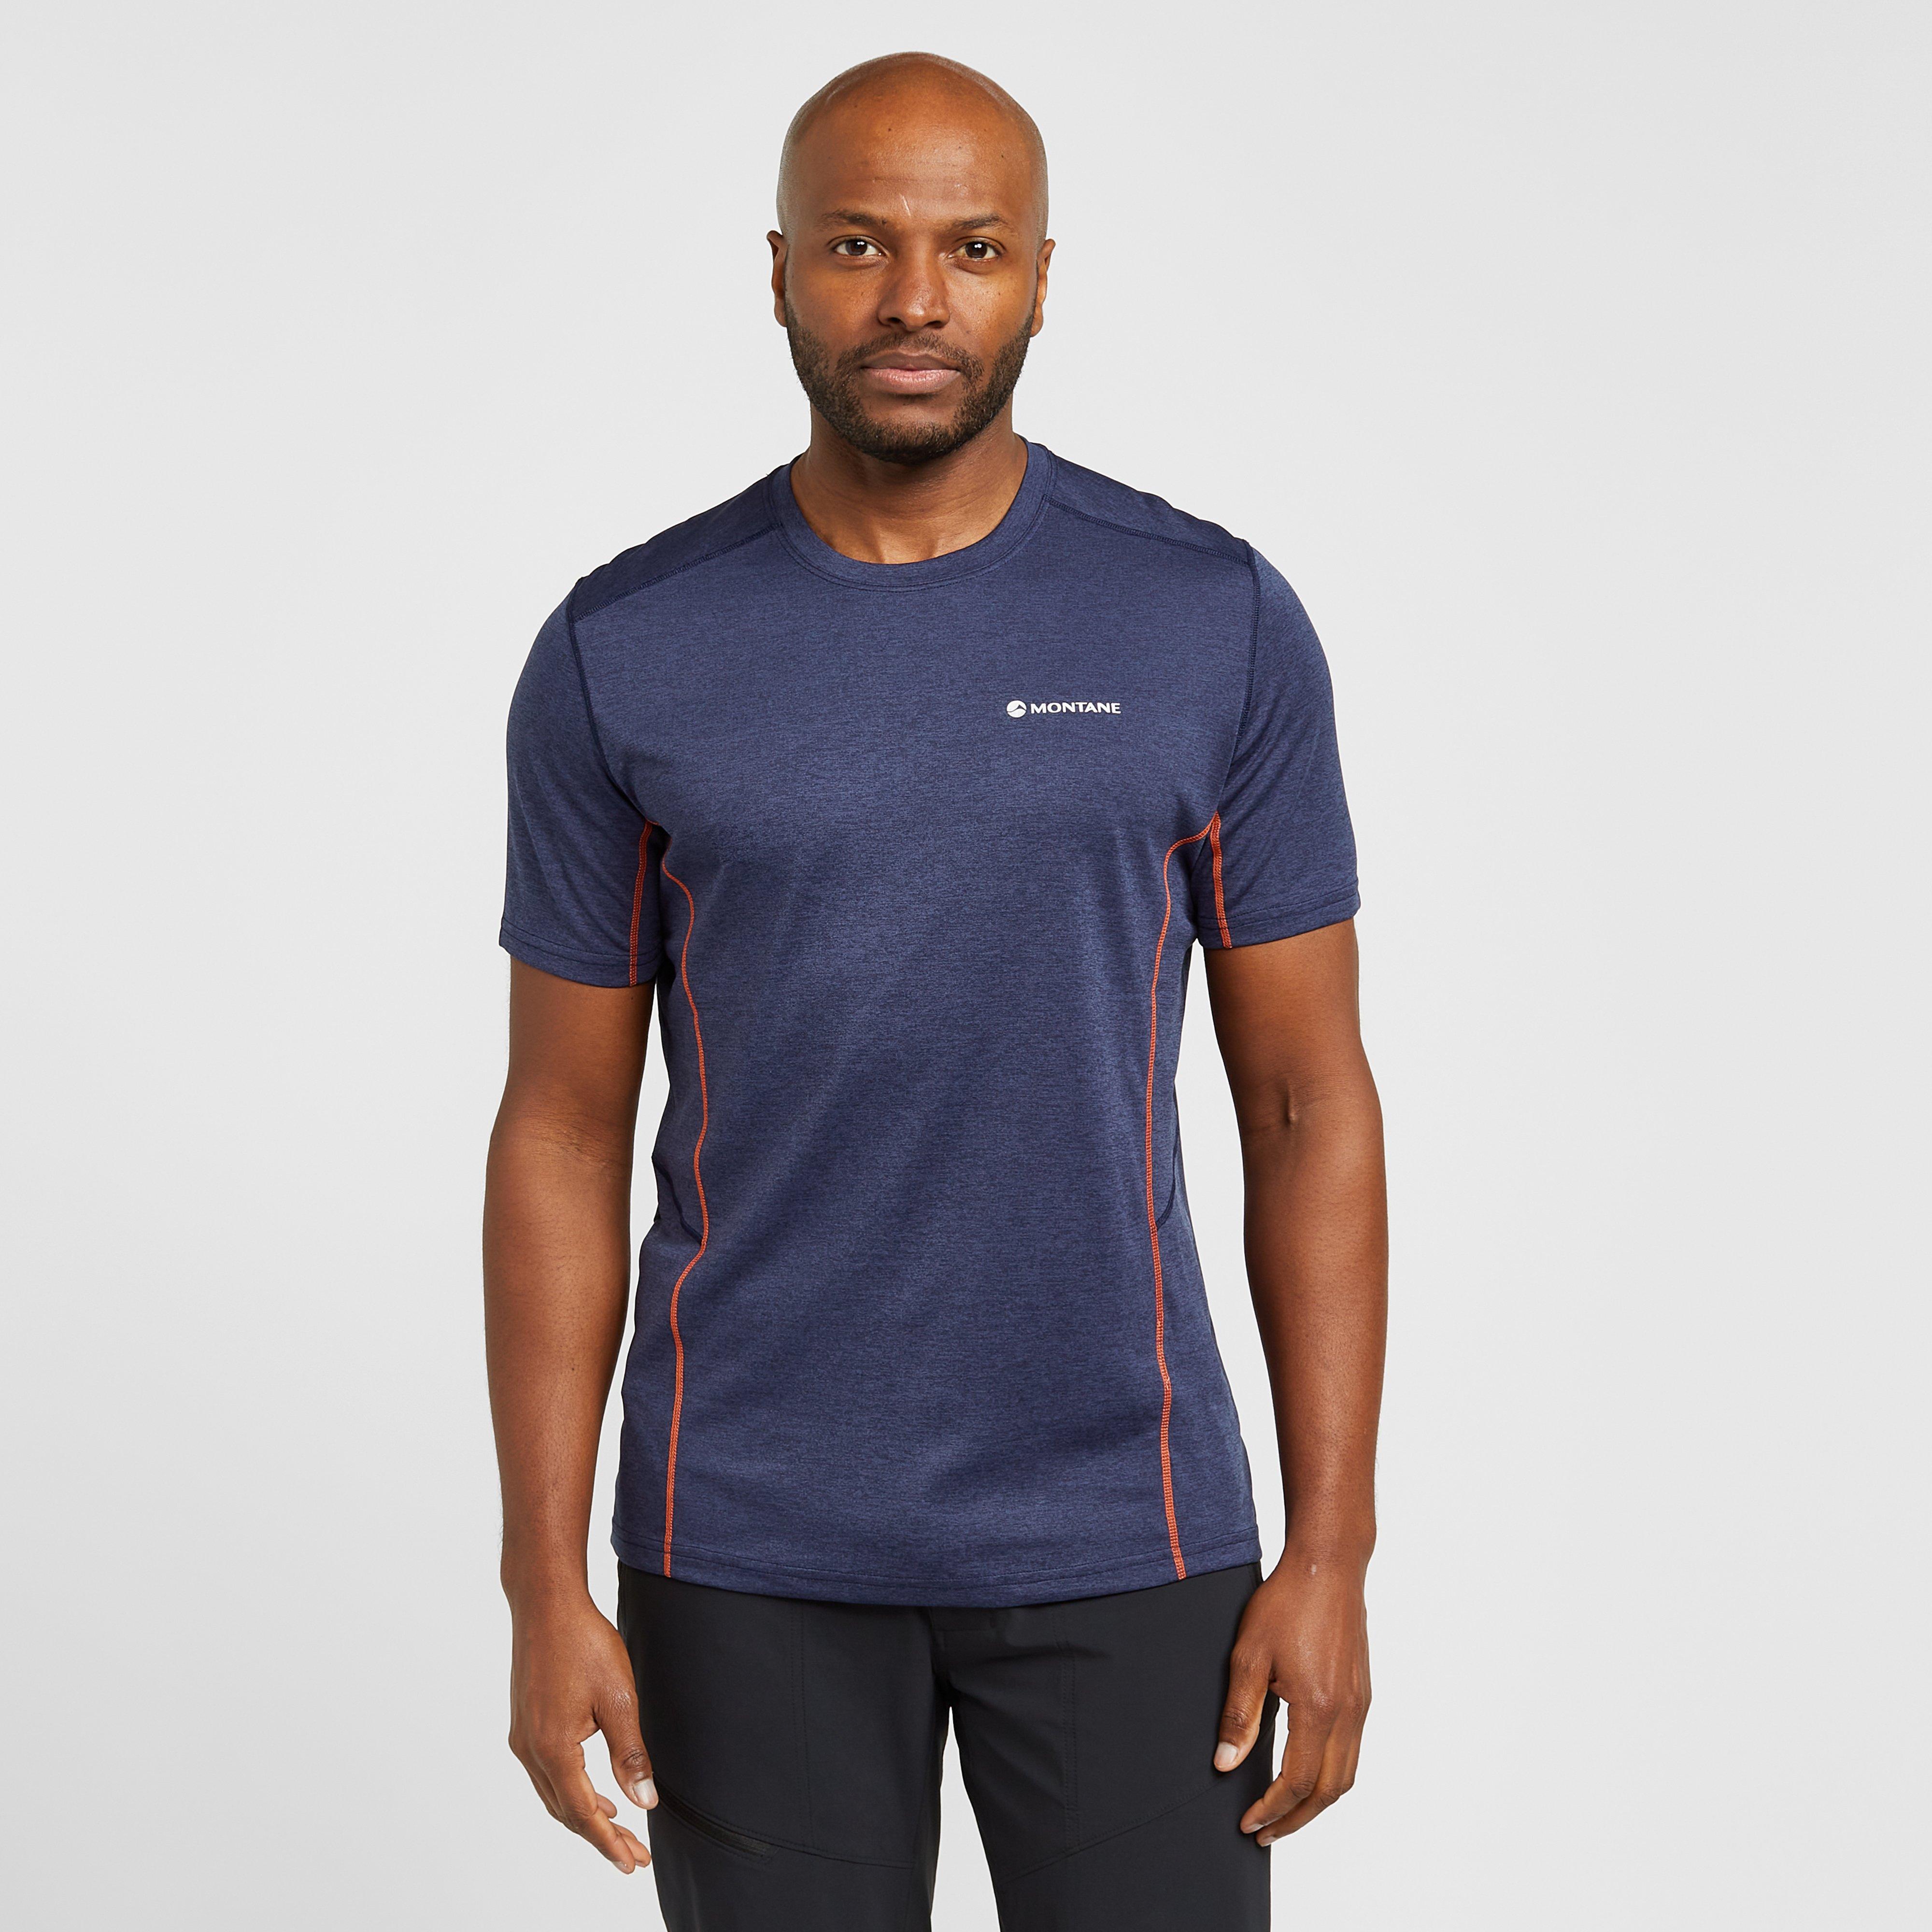 Montane Mens Dart Short Sleeve T-shirt - Navy Blue/navy Blue  Navy Blue/navy Blue